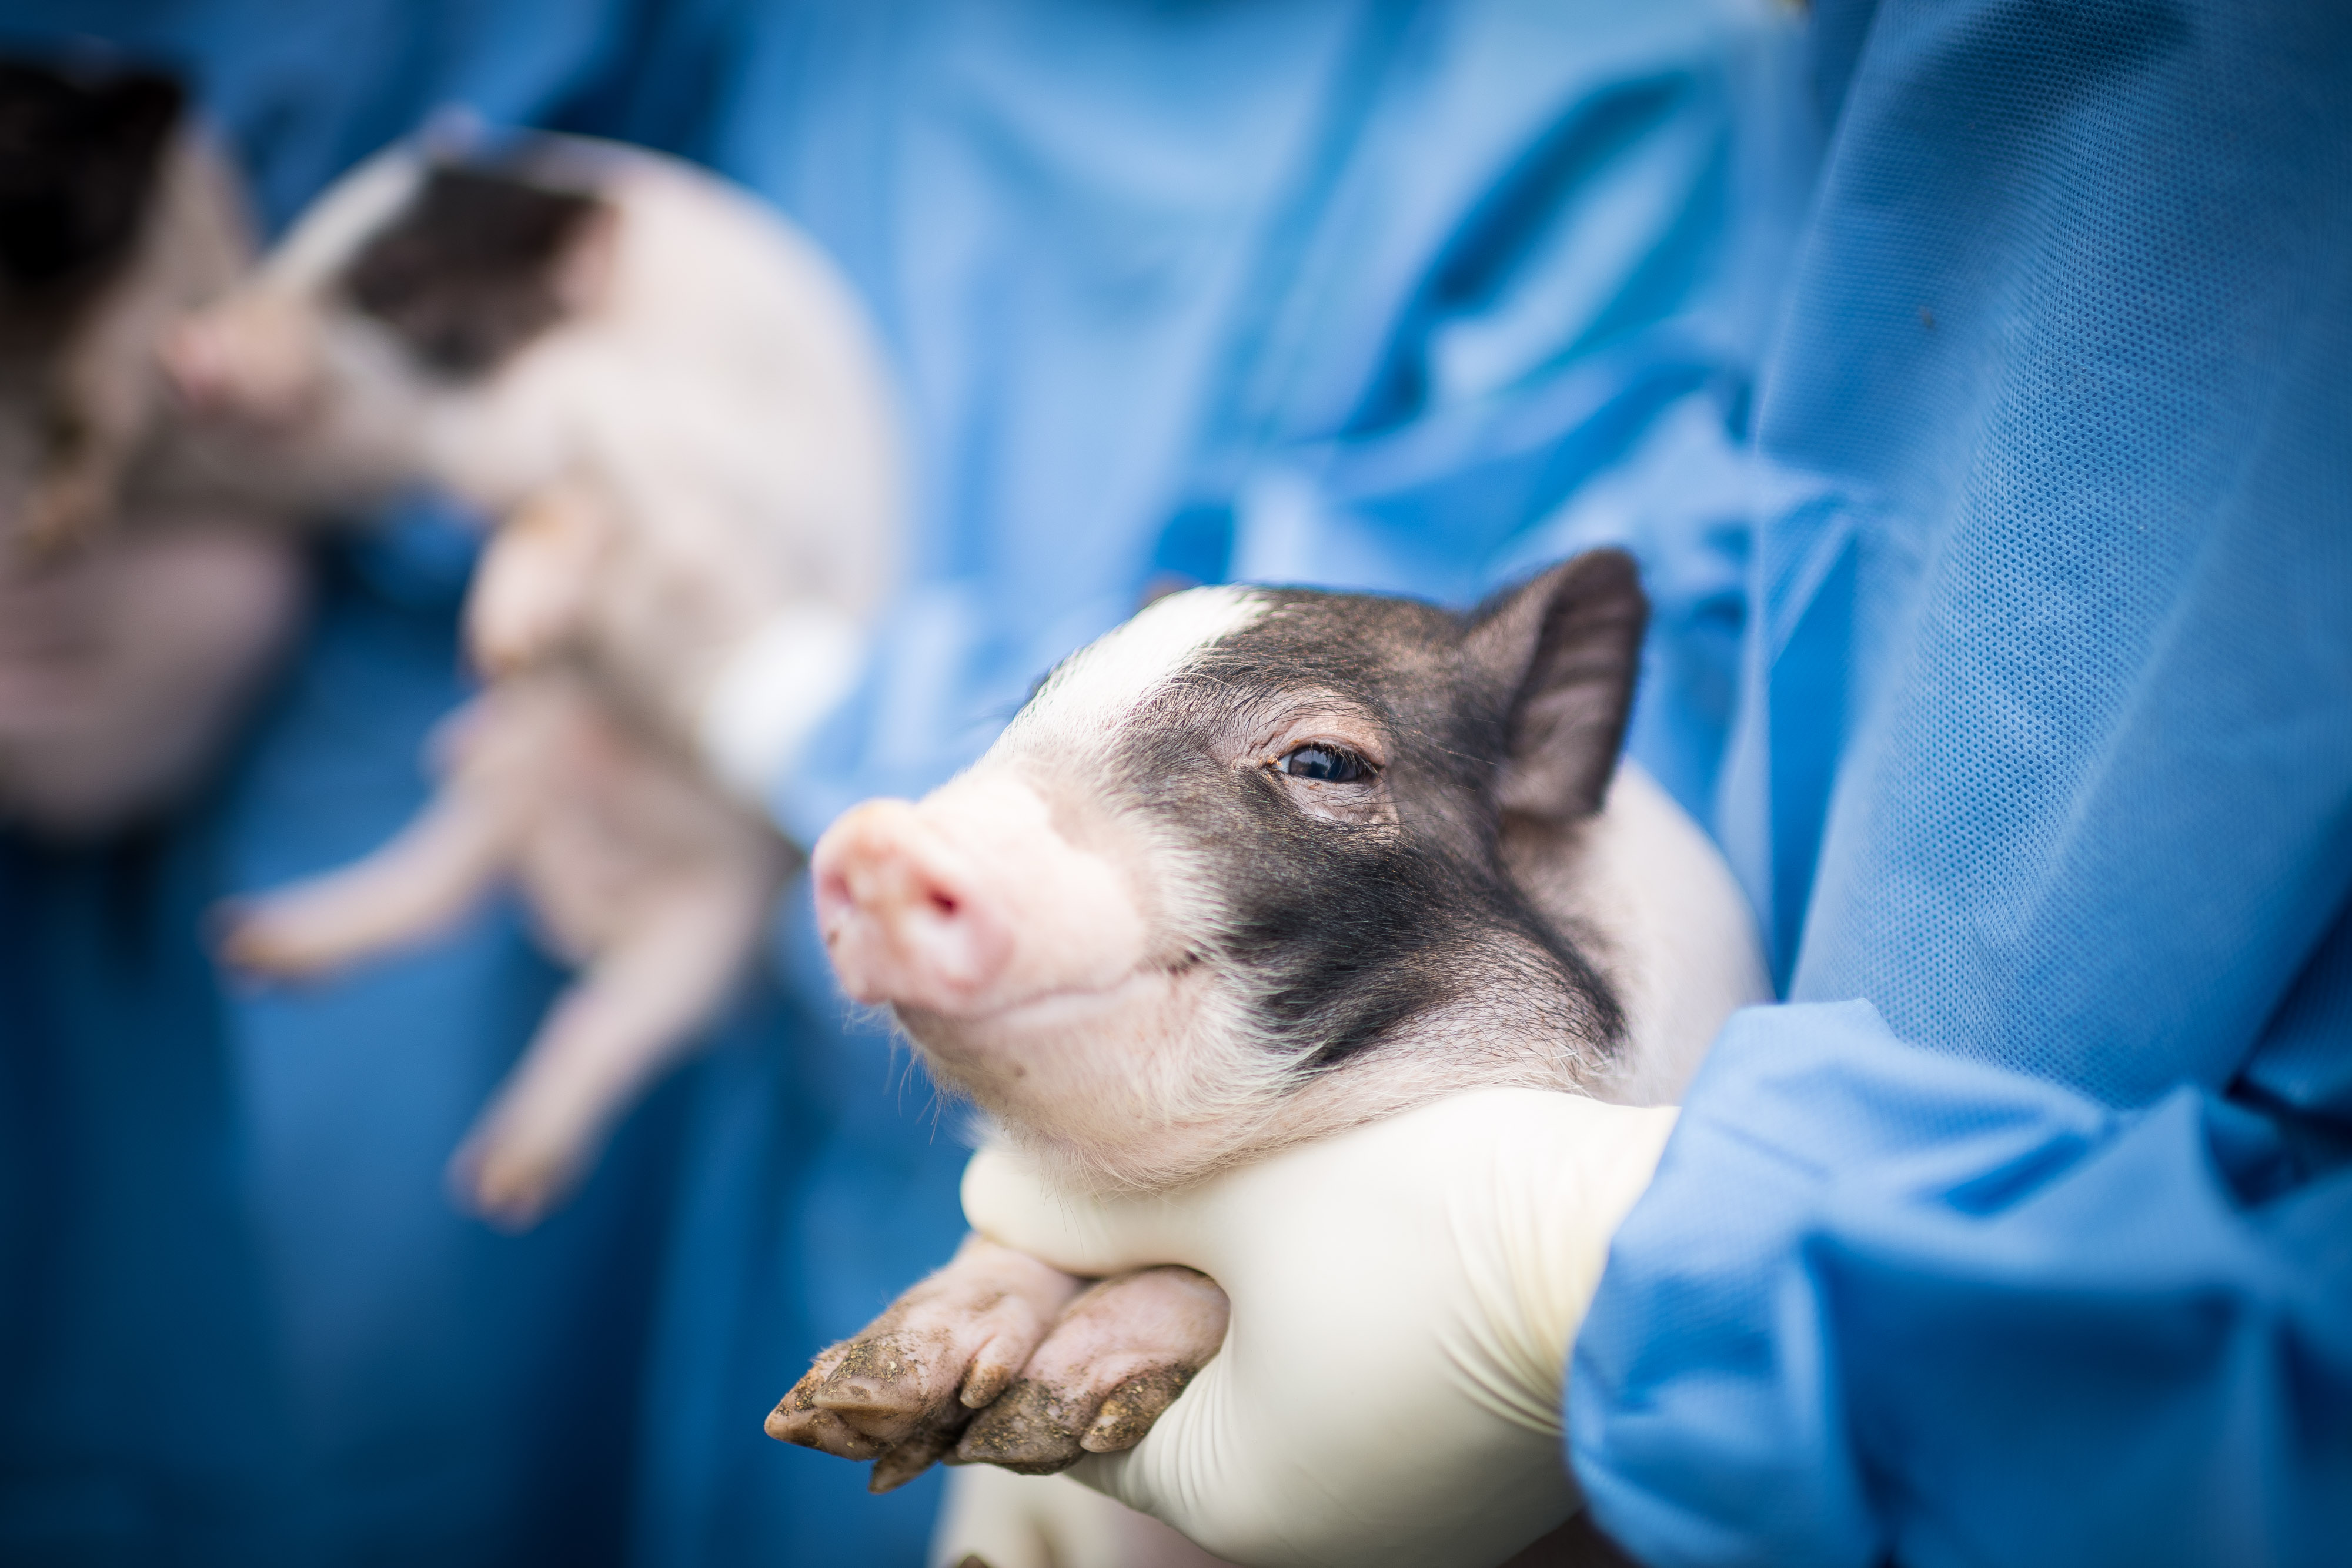  Các nhà khoa học Trung Quốc đã tạo ra những con lợn mi ni để phục vụ nghiên cứu khoa học từ năm 2015.Nguồn: Nature